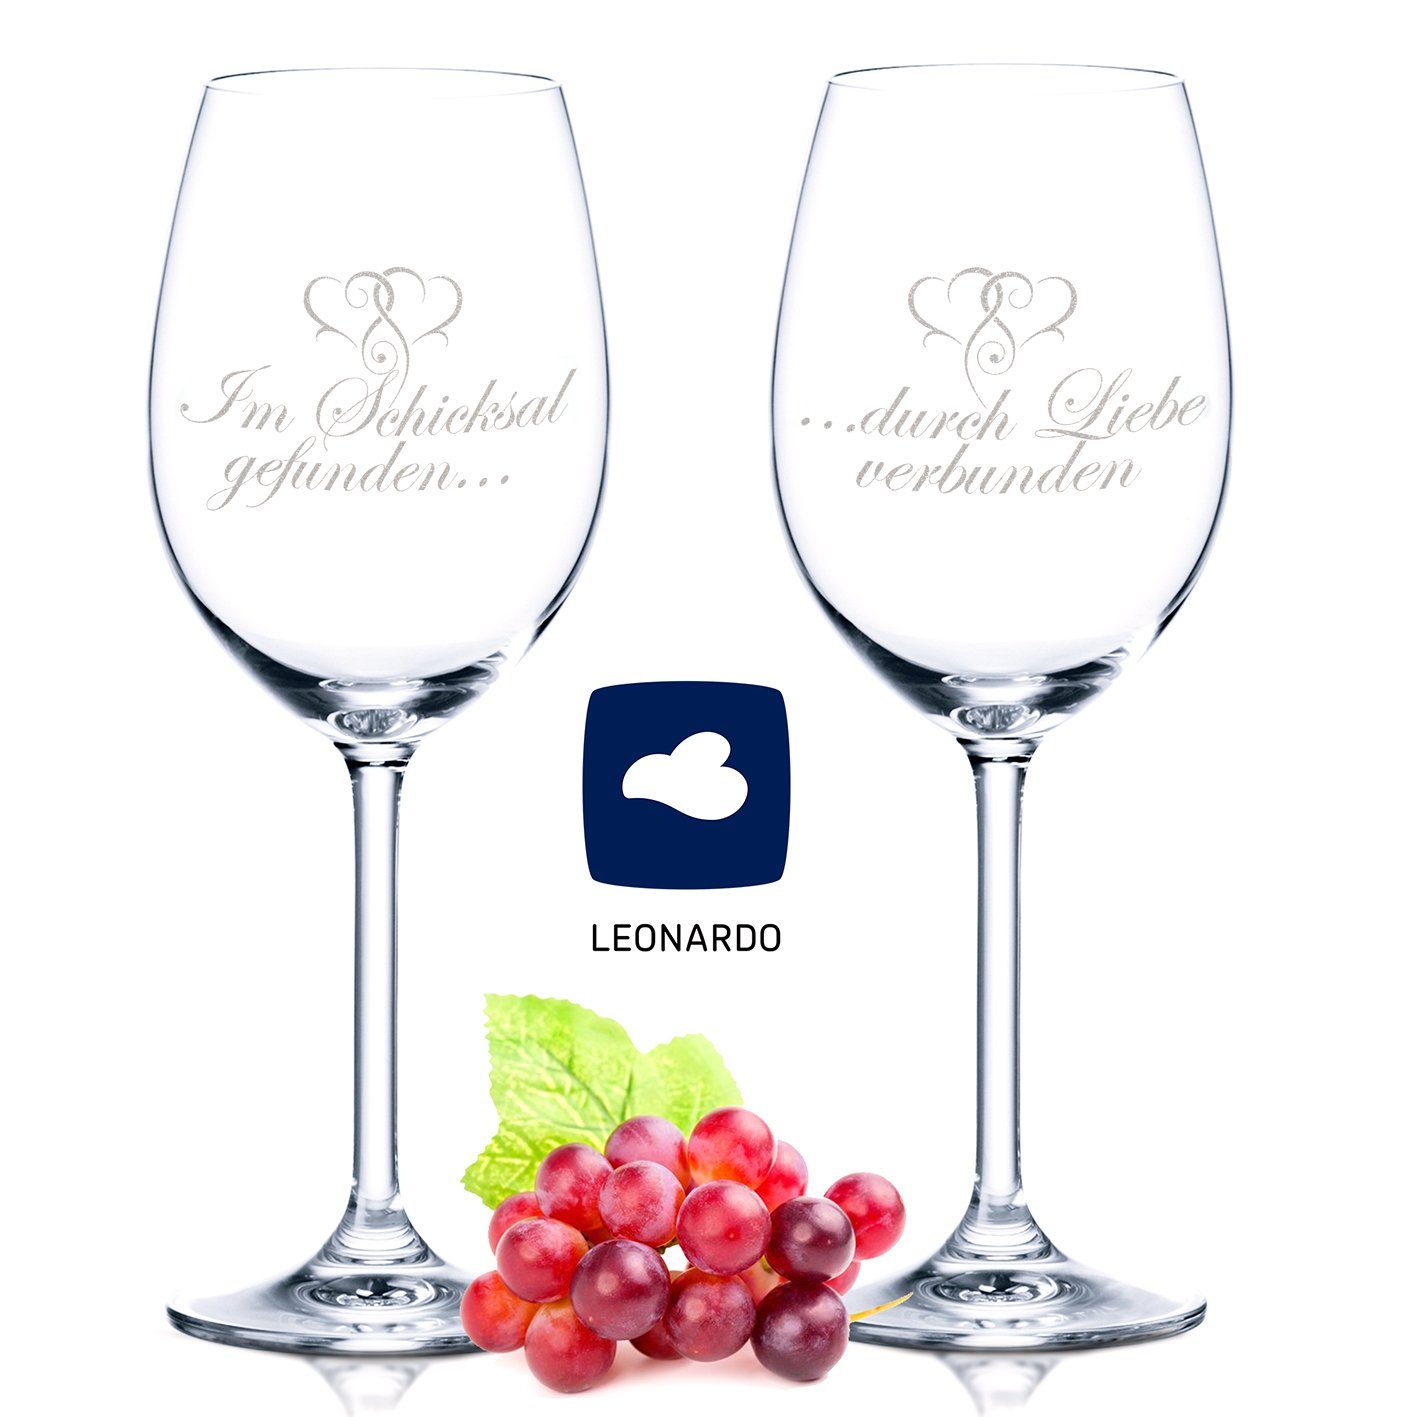 GRAVURZEILE Rotweinglas Leonardo Weinglas Im Schicksal gefunden durch Liebe  verbunden mit Gravur im Set als Geschenk zur Hochzeit, Verlobung oder zum  Jahrestag - das Hochzeitsgeschenk für Paare, Glas